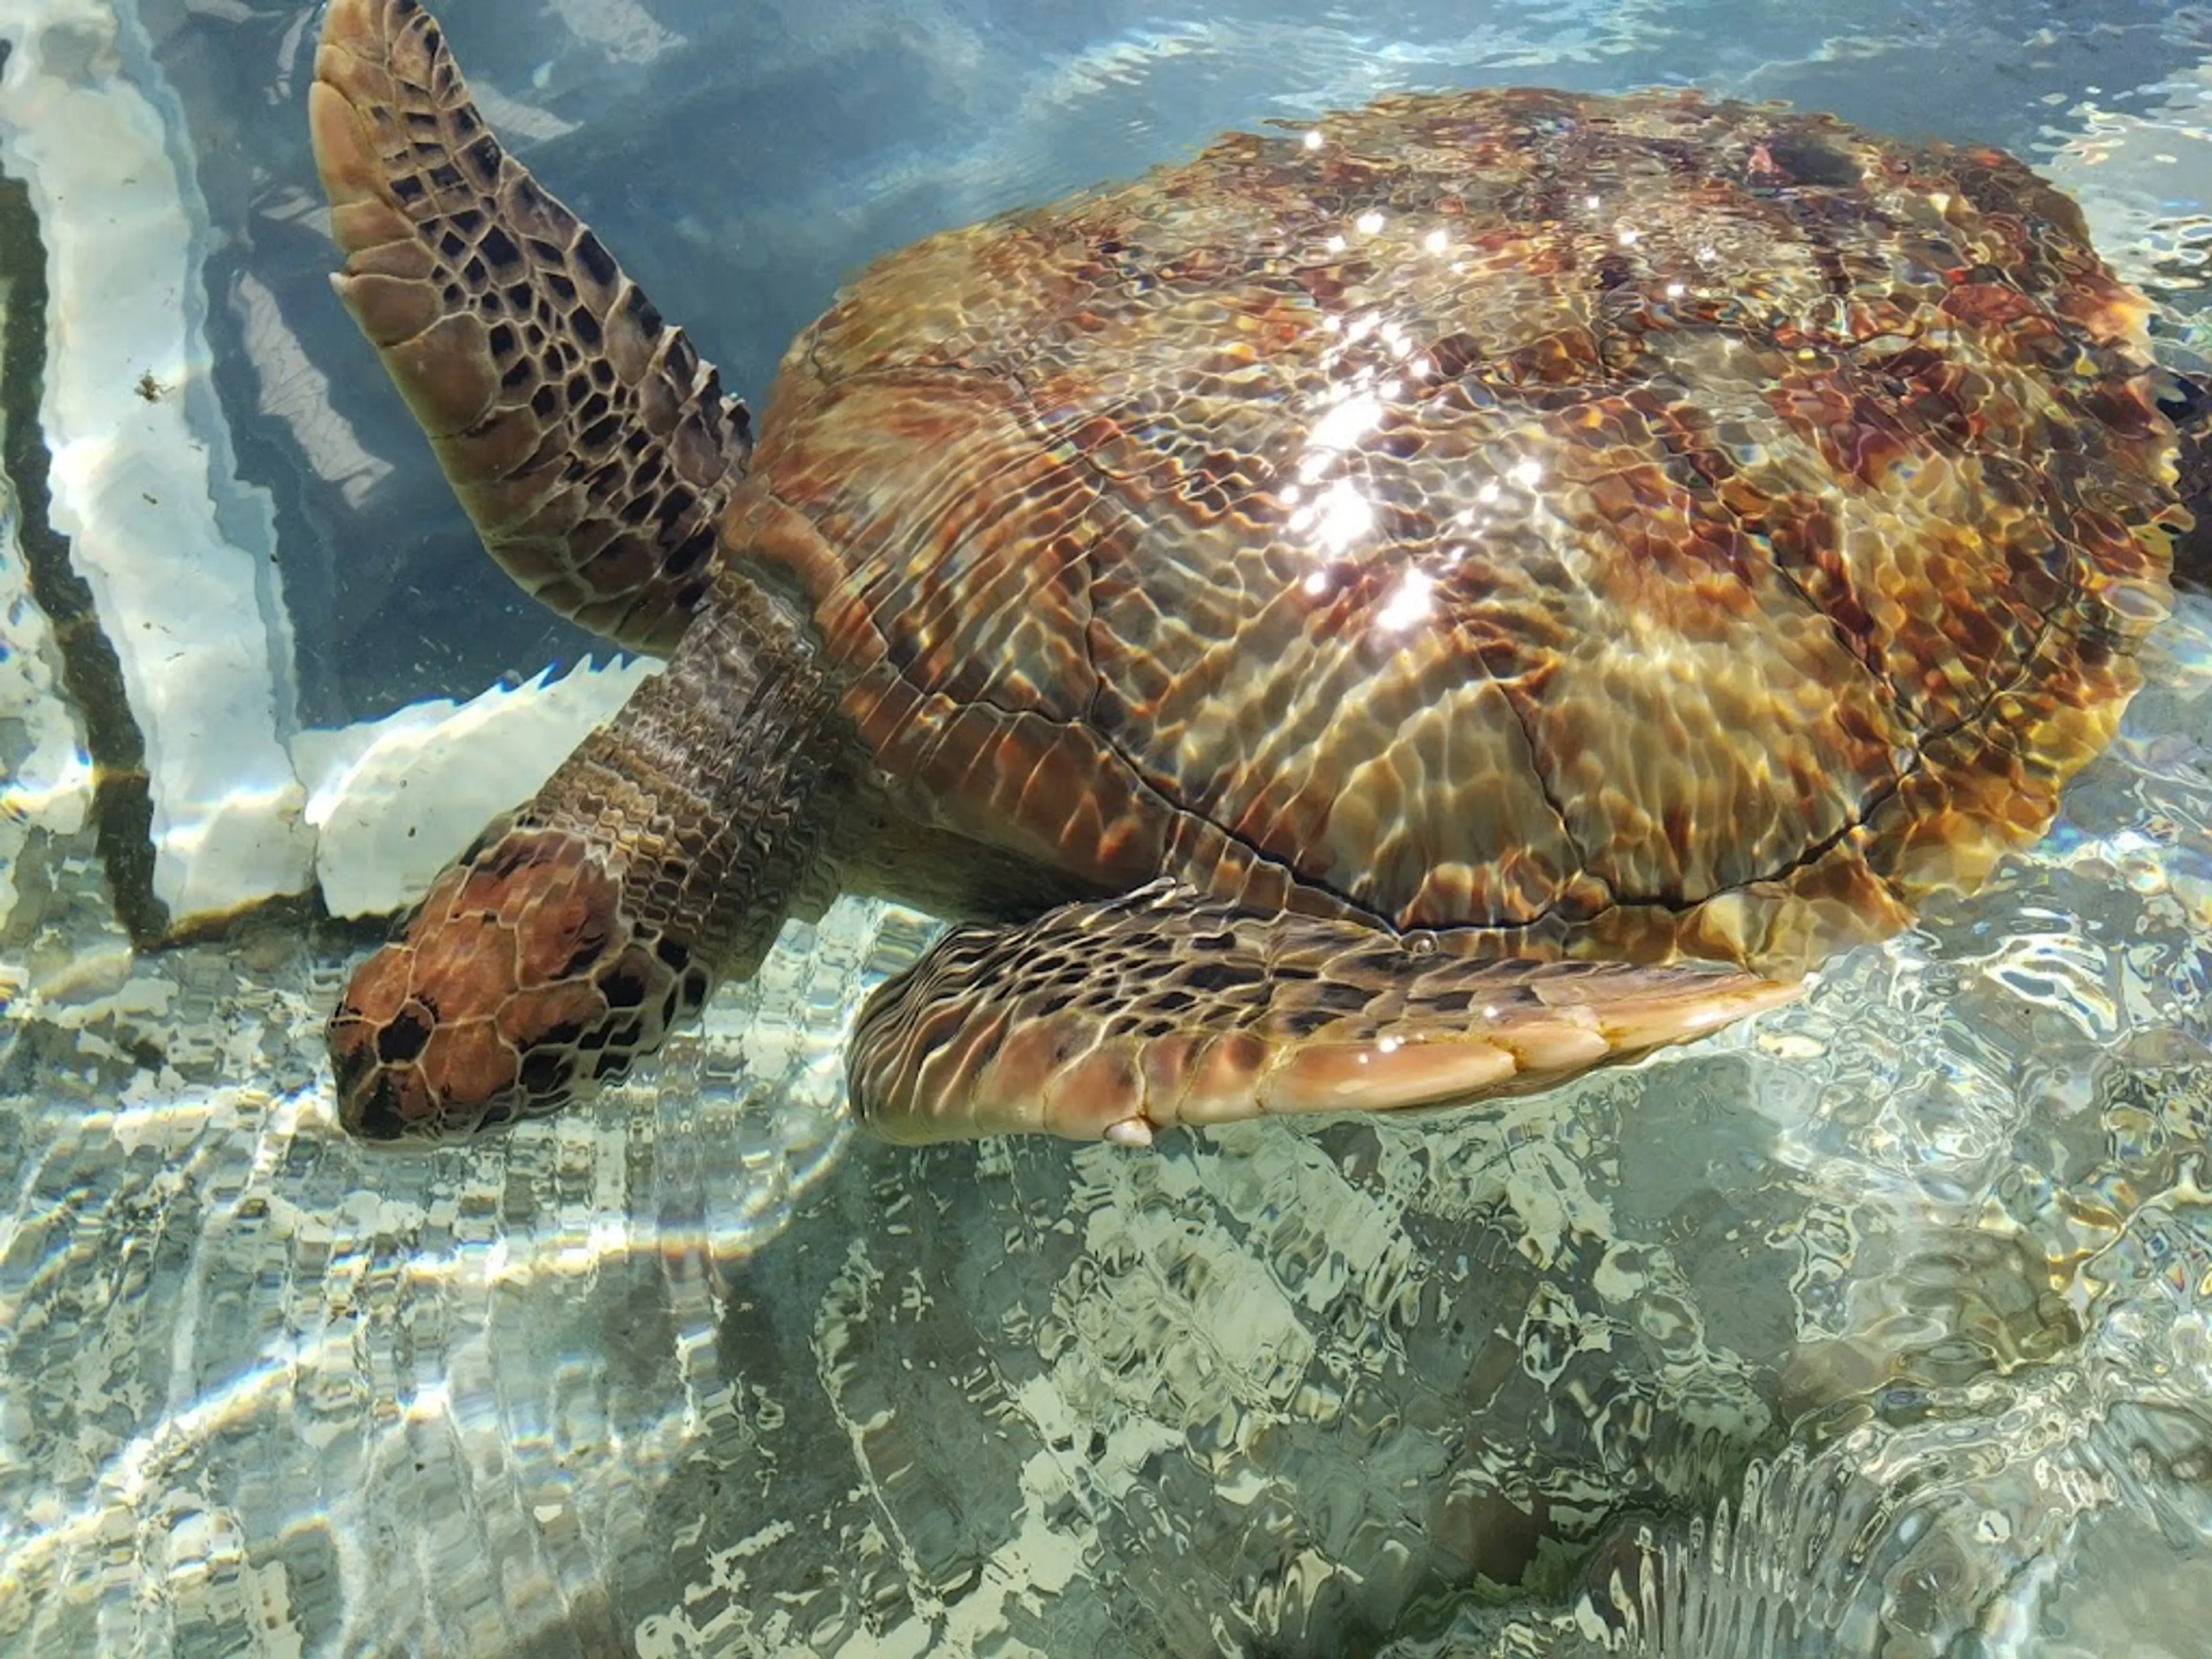 Kelonia turtle sanctuary